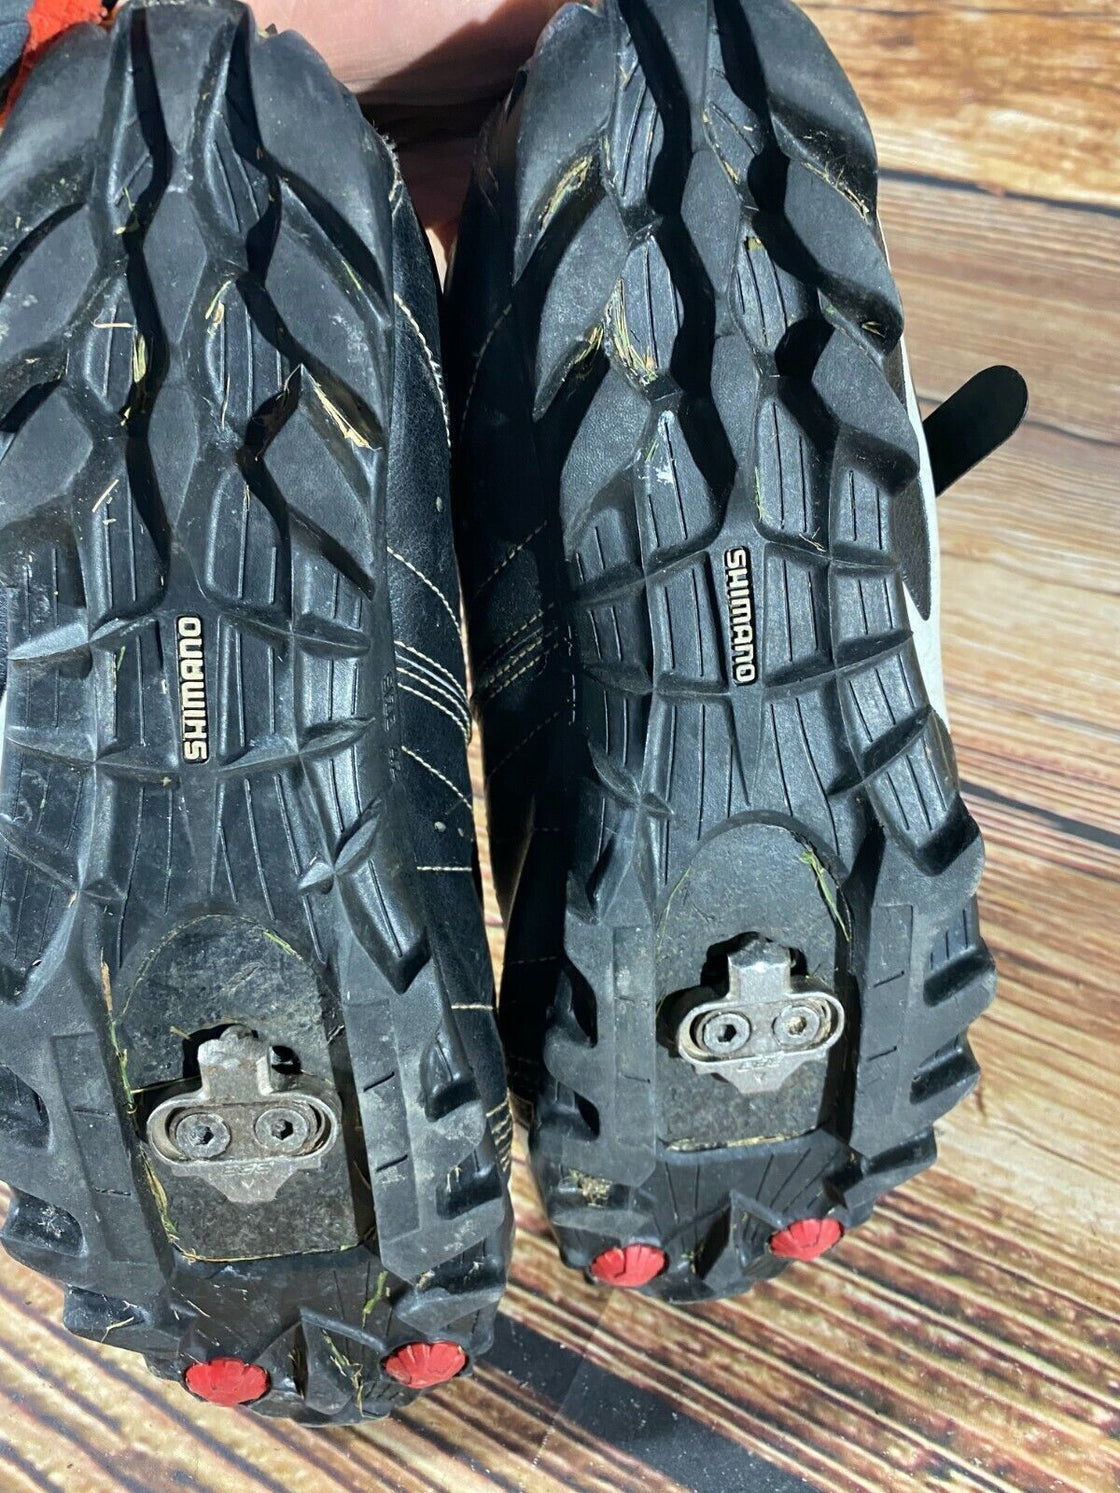 SHIMANO M086 Cycling MTB Shoes Mountain Biking Boots Size EU 42 with SPD Cleats